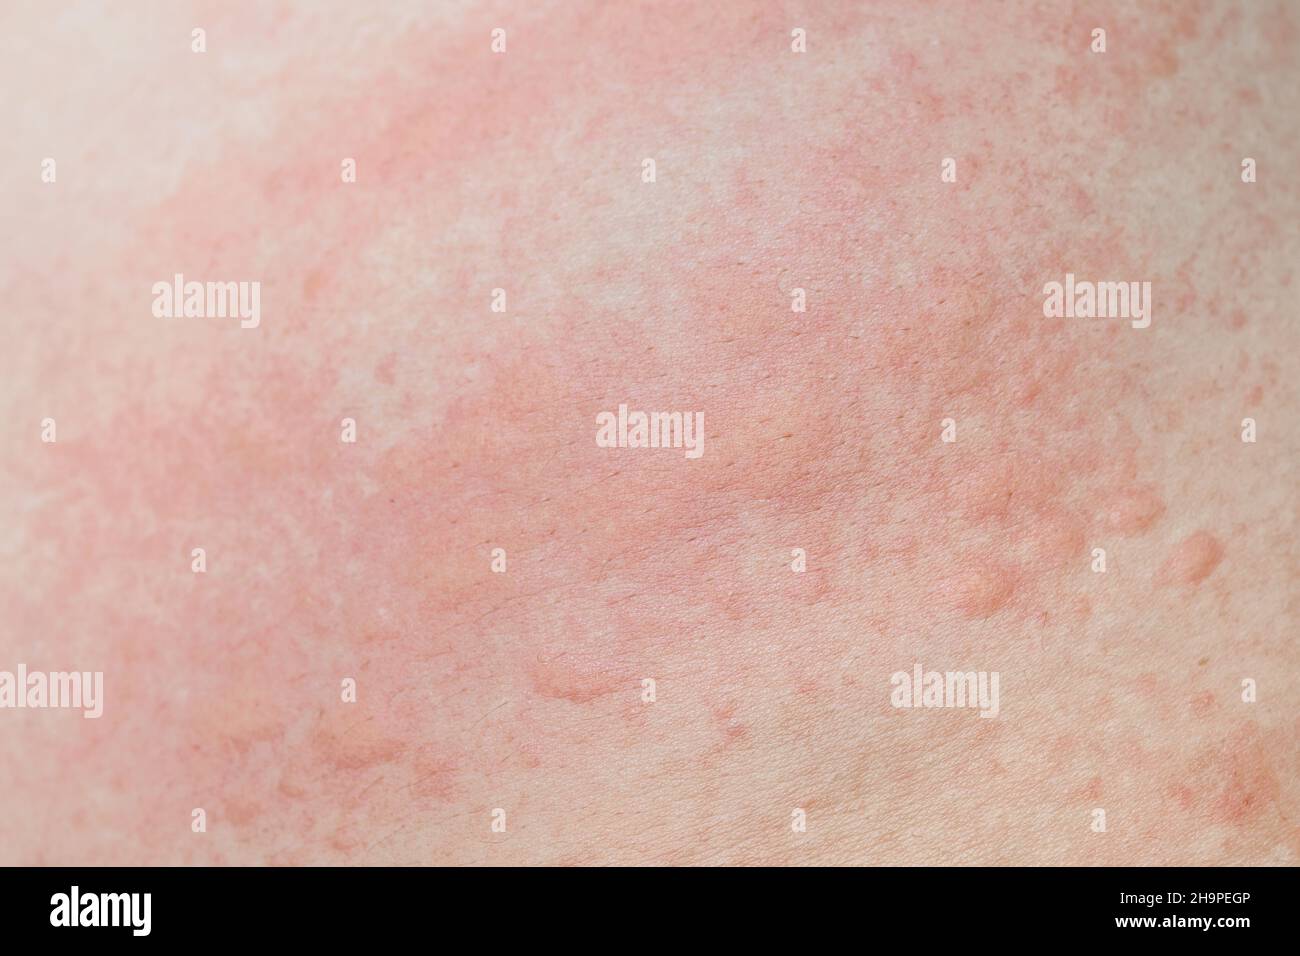 tjener stimulere På hovedet af Prickly heat rash hi-res stock photography and images - Alamy